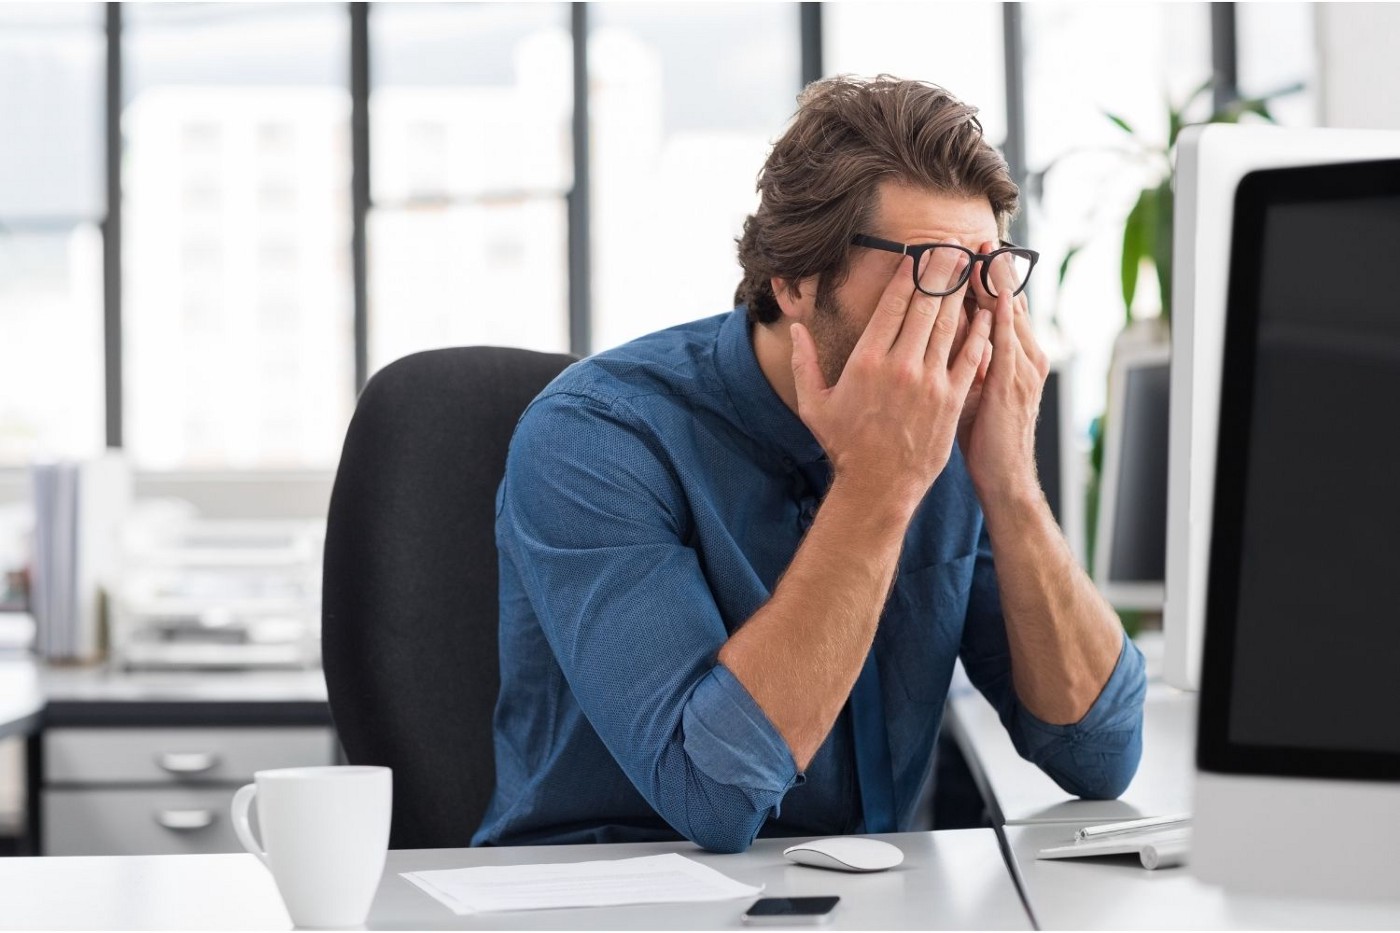 एक तनावग्रस्त व्यक्ति अपने सिर पर हाथ रखकर कंप्यूटर पर बैठा है।